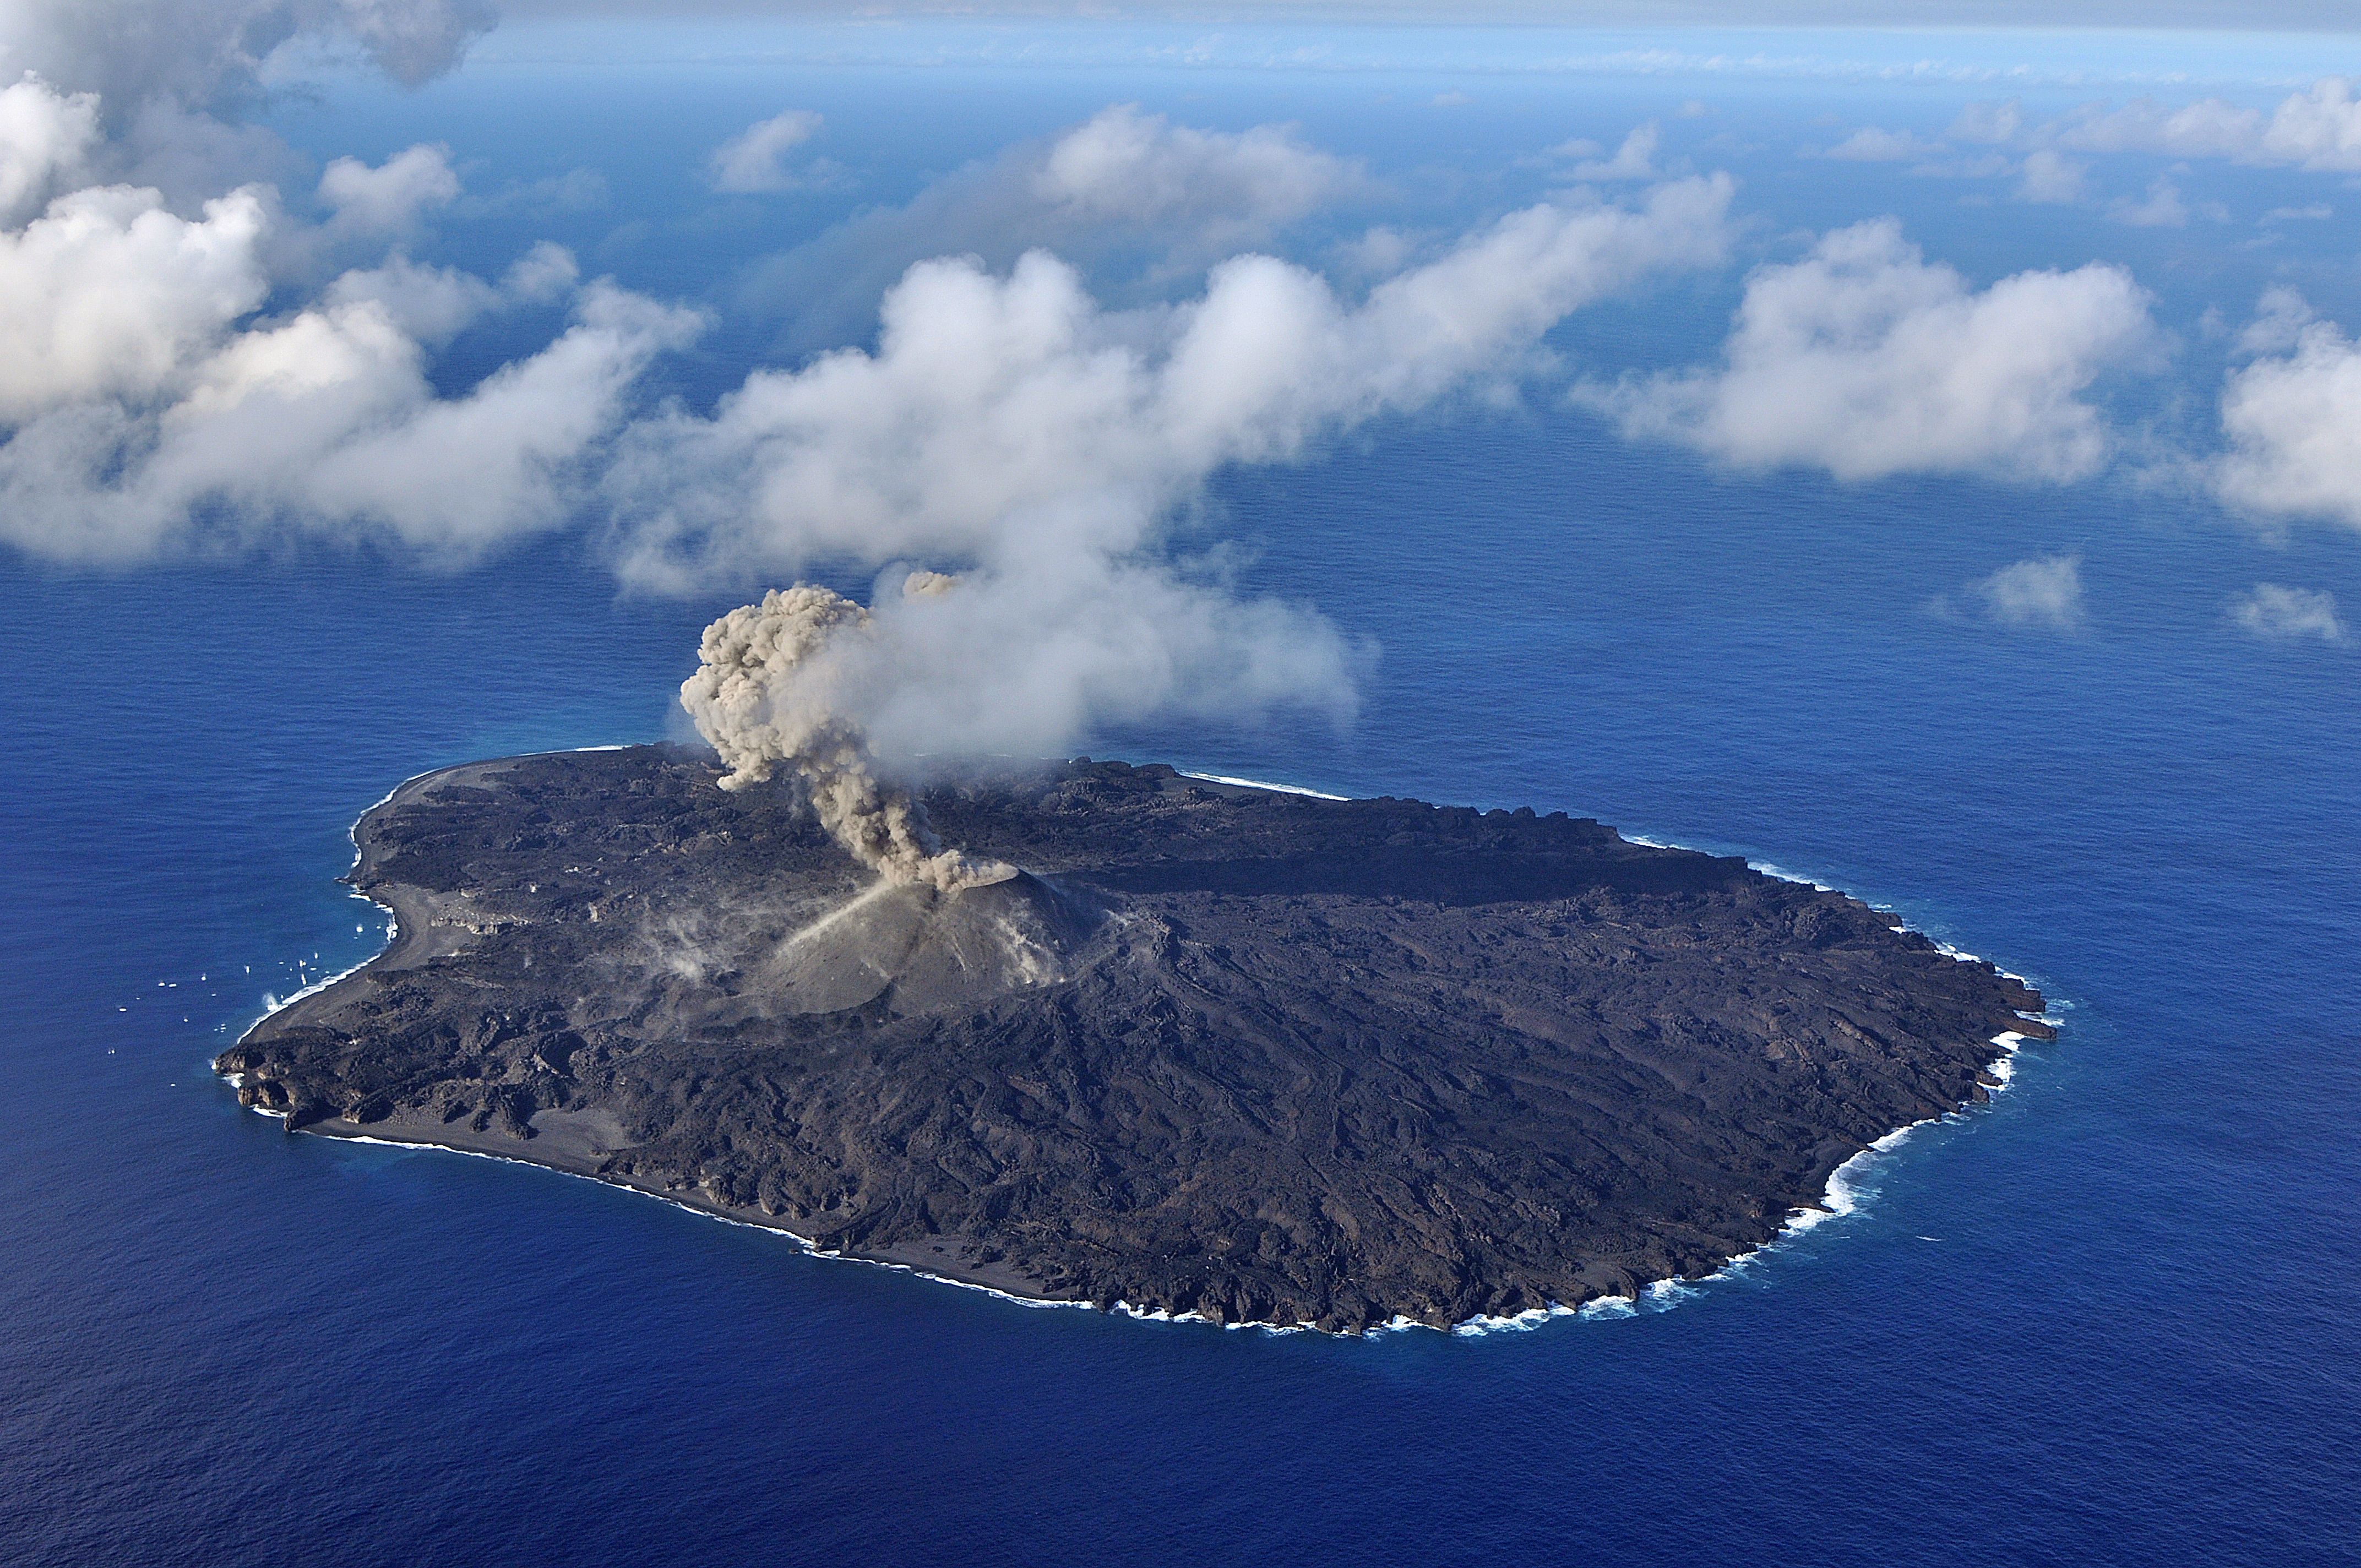 Volcano island. Остров Ниидзима, Япония. Нисиносима вулкан. Остров Ниидзима Япония 2013. Вулканический остров Нисиносима.